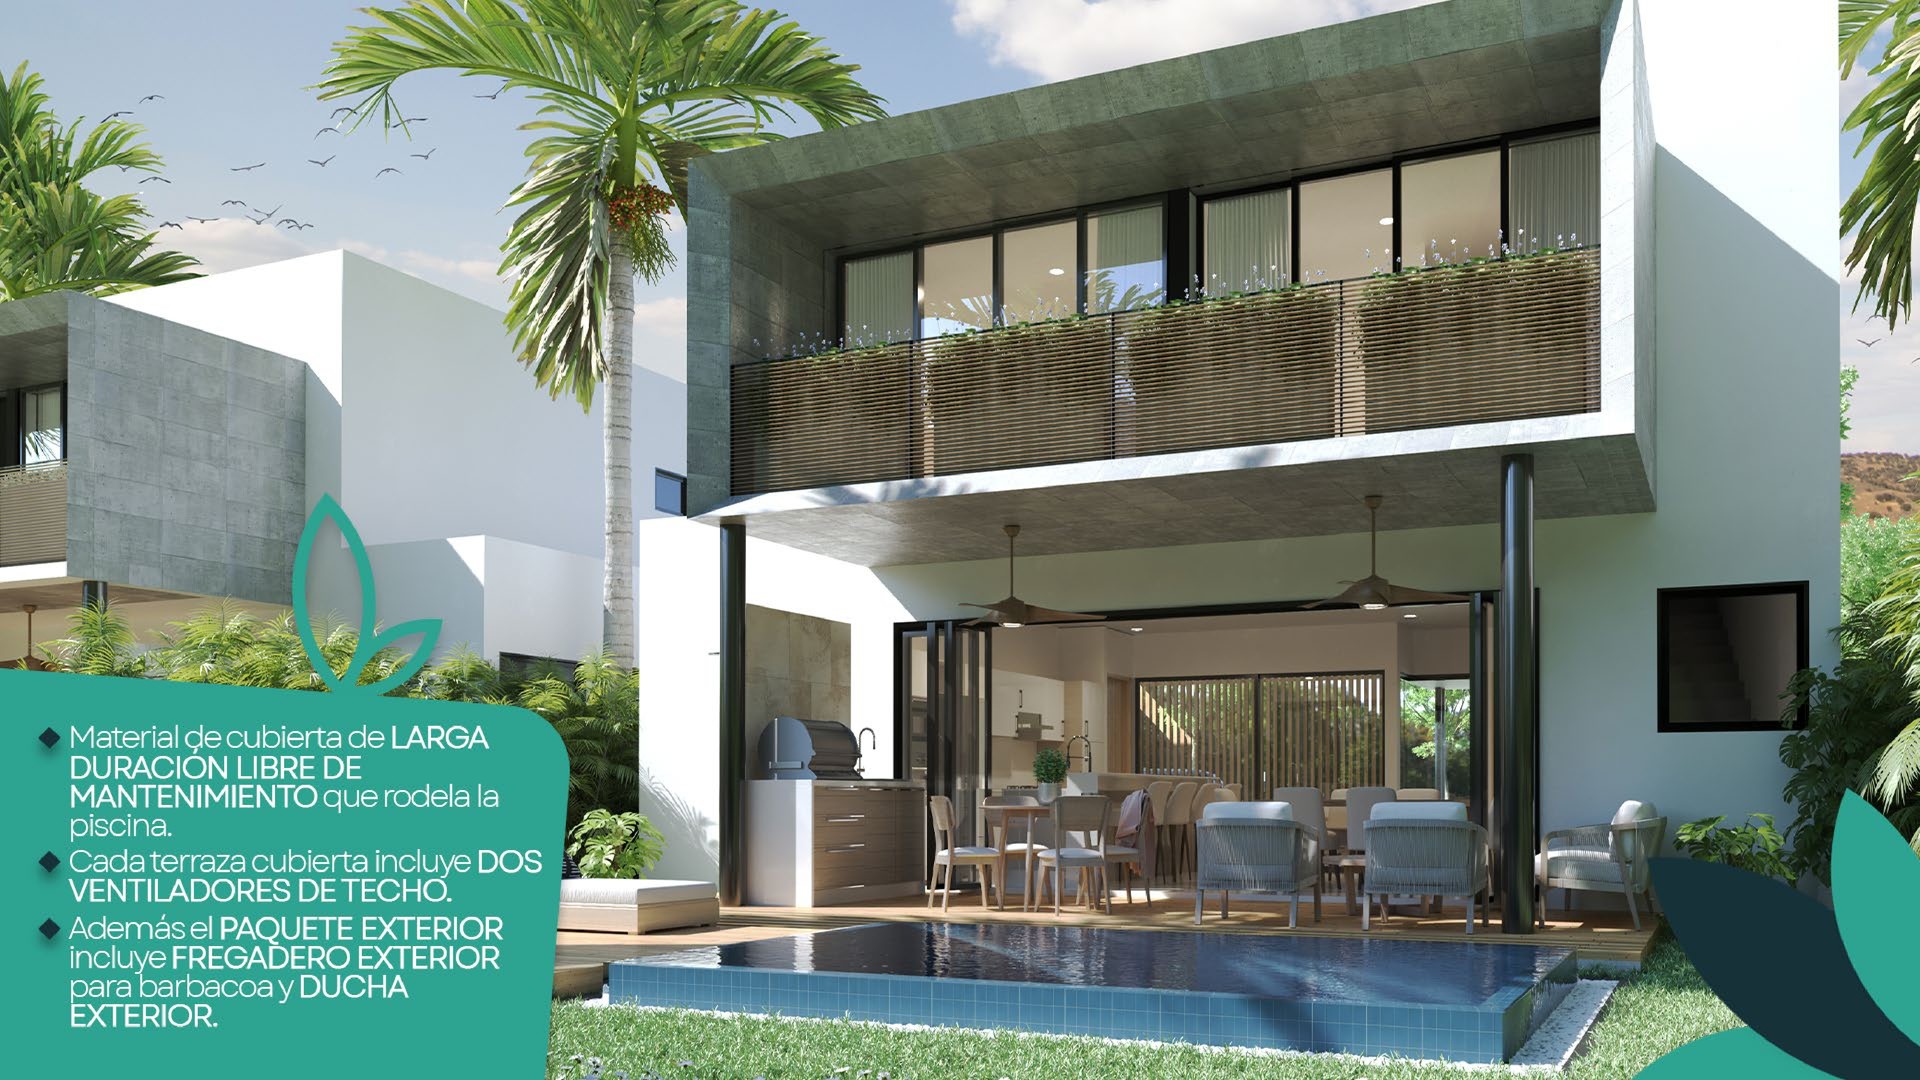 casas vacacionales y villas - Hermoso Proyecto en construccion en Punta Cana, Villas de 2 y 3 hab, amobladas.  3